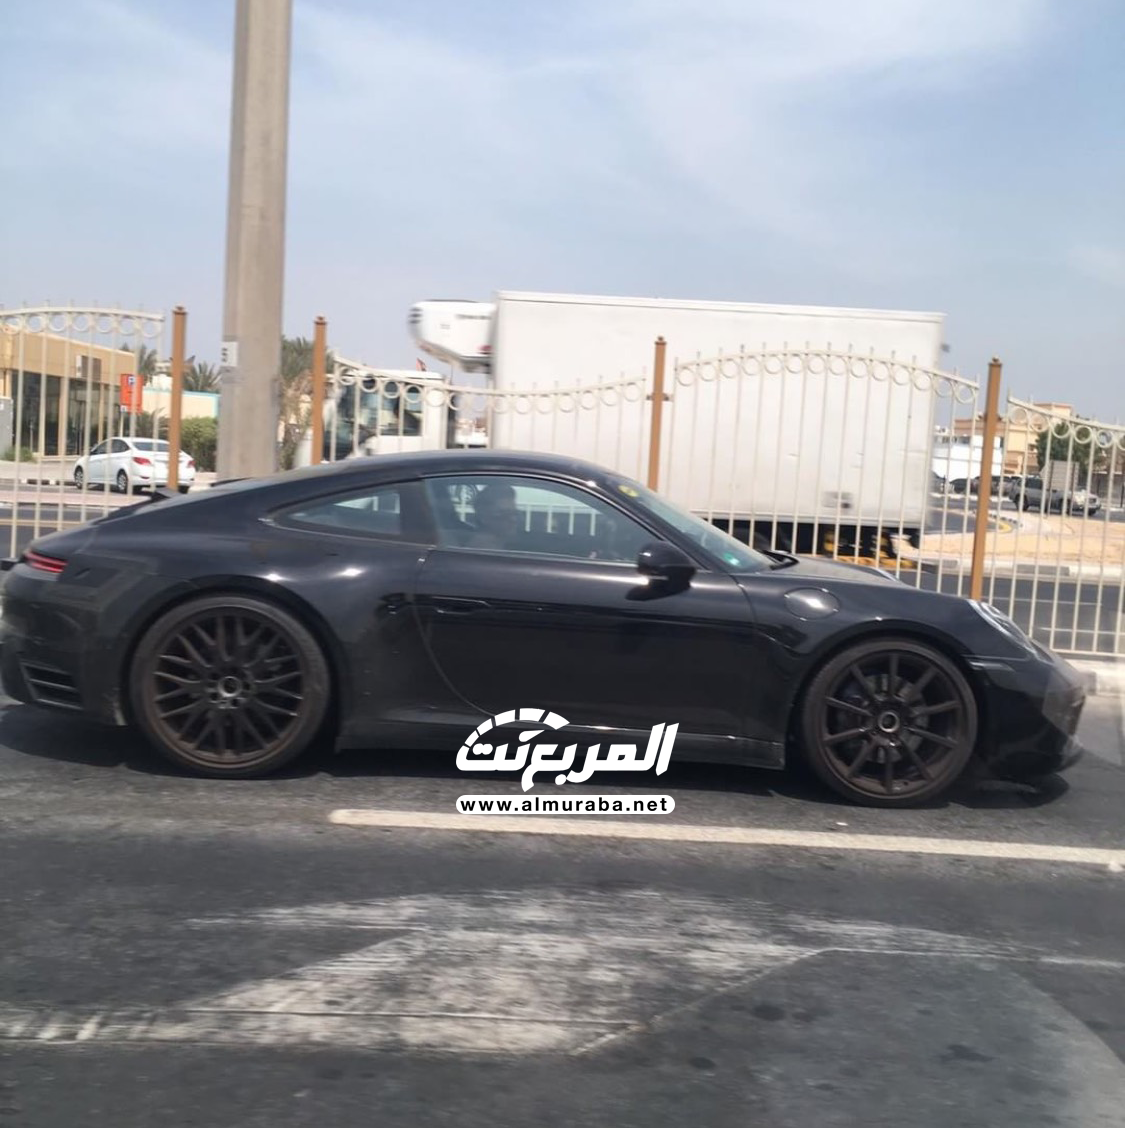 "بالصور" بورش 911 الجديدة كلياً تختبر نفسها في شوارع مدينة دبي 2